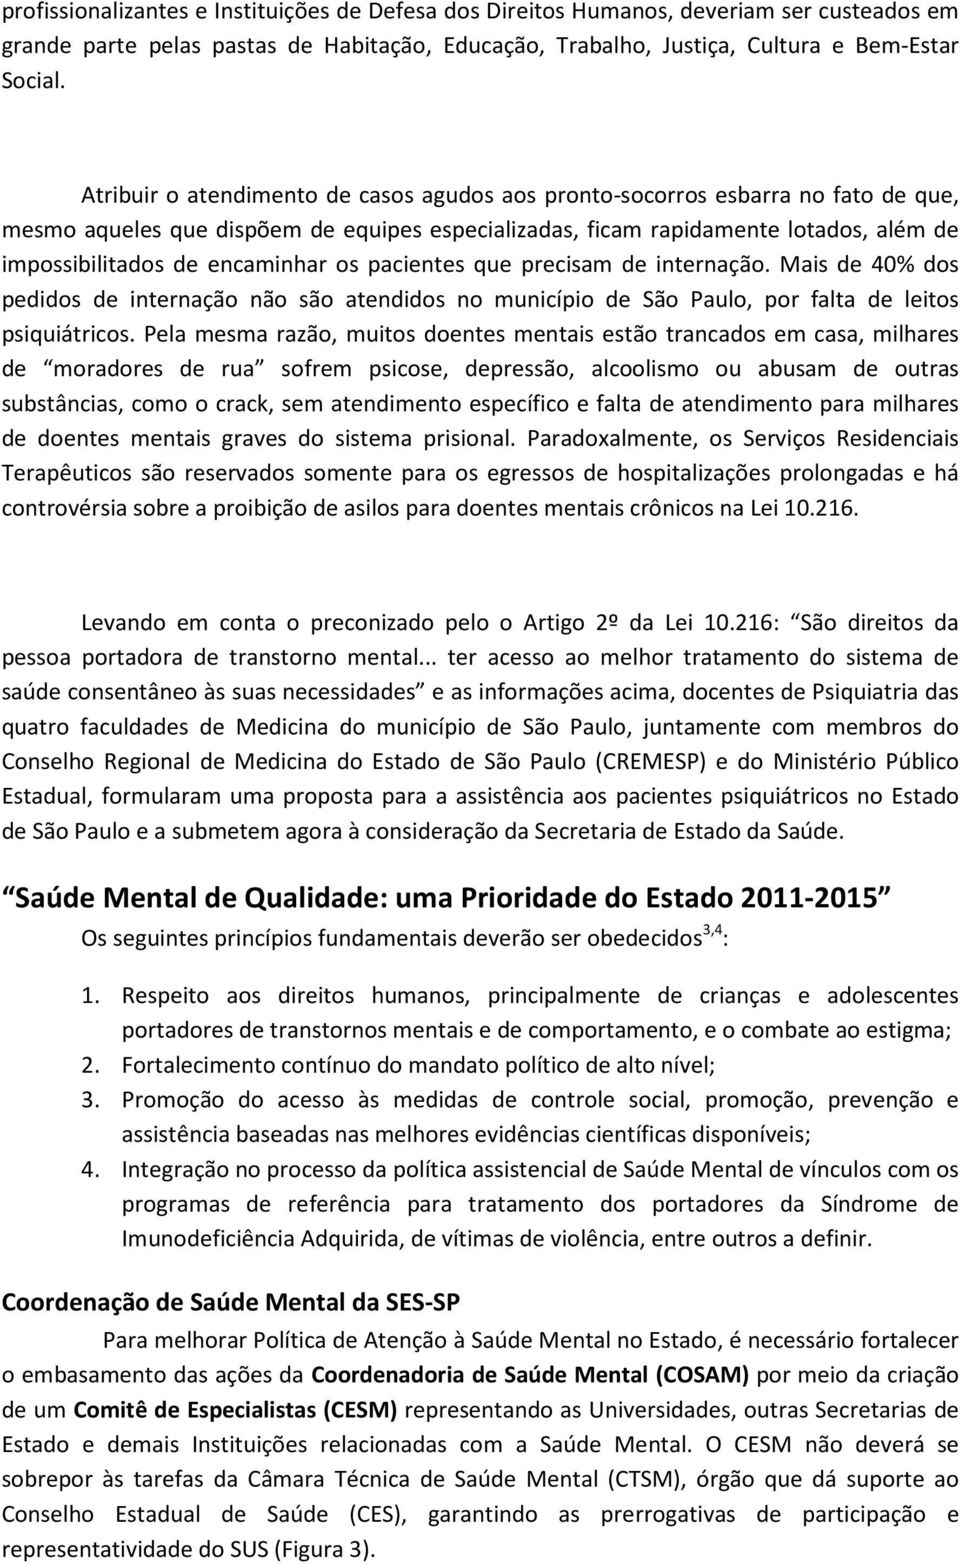 encaminhar os pacientes que precisam de internação. Mais de 40% dos pedidos de internação não são atendidos no município de São Paulo, por falta de leitos psiquiátricos.